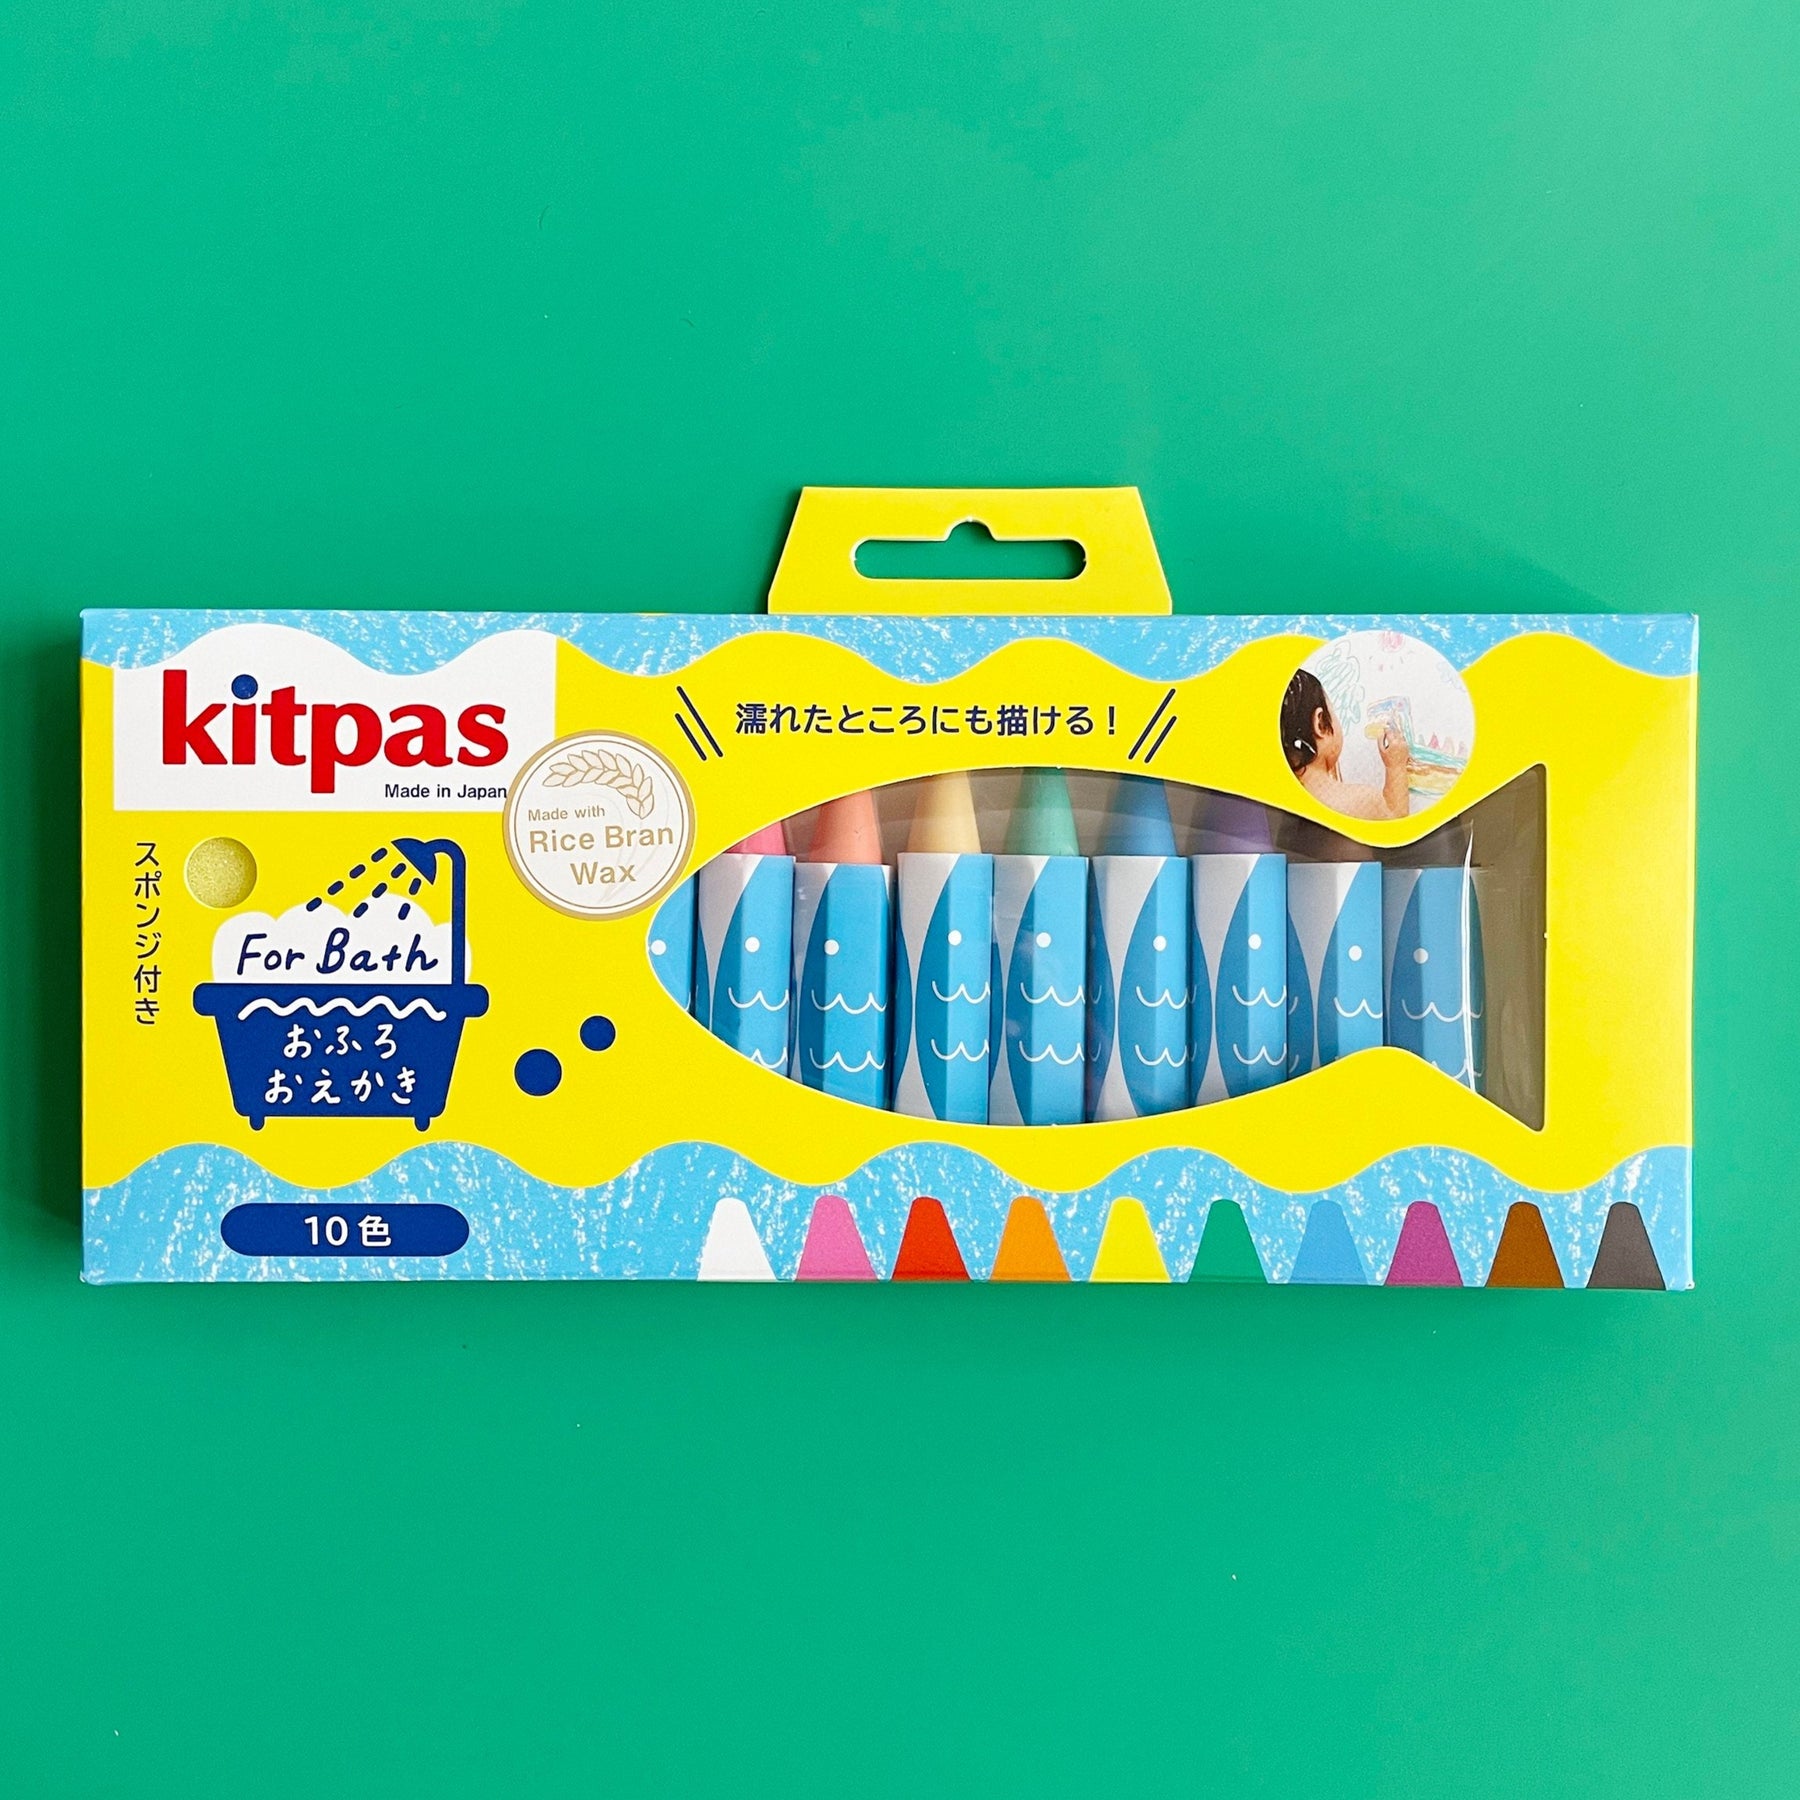 Bath Crayons – Messy Play Kits